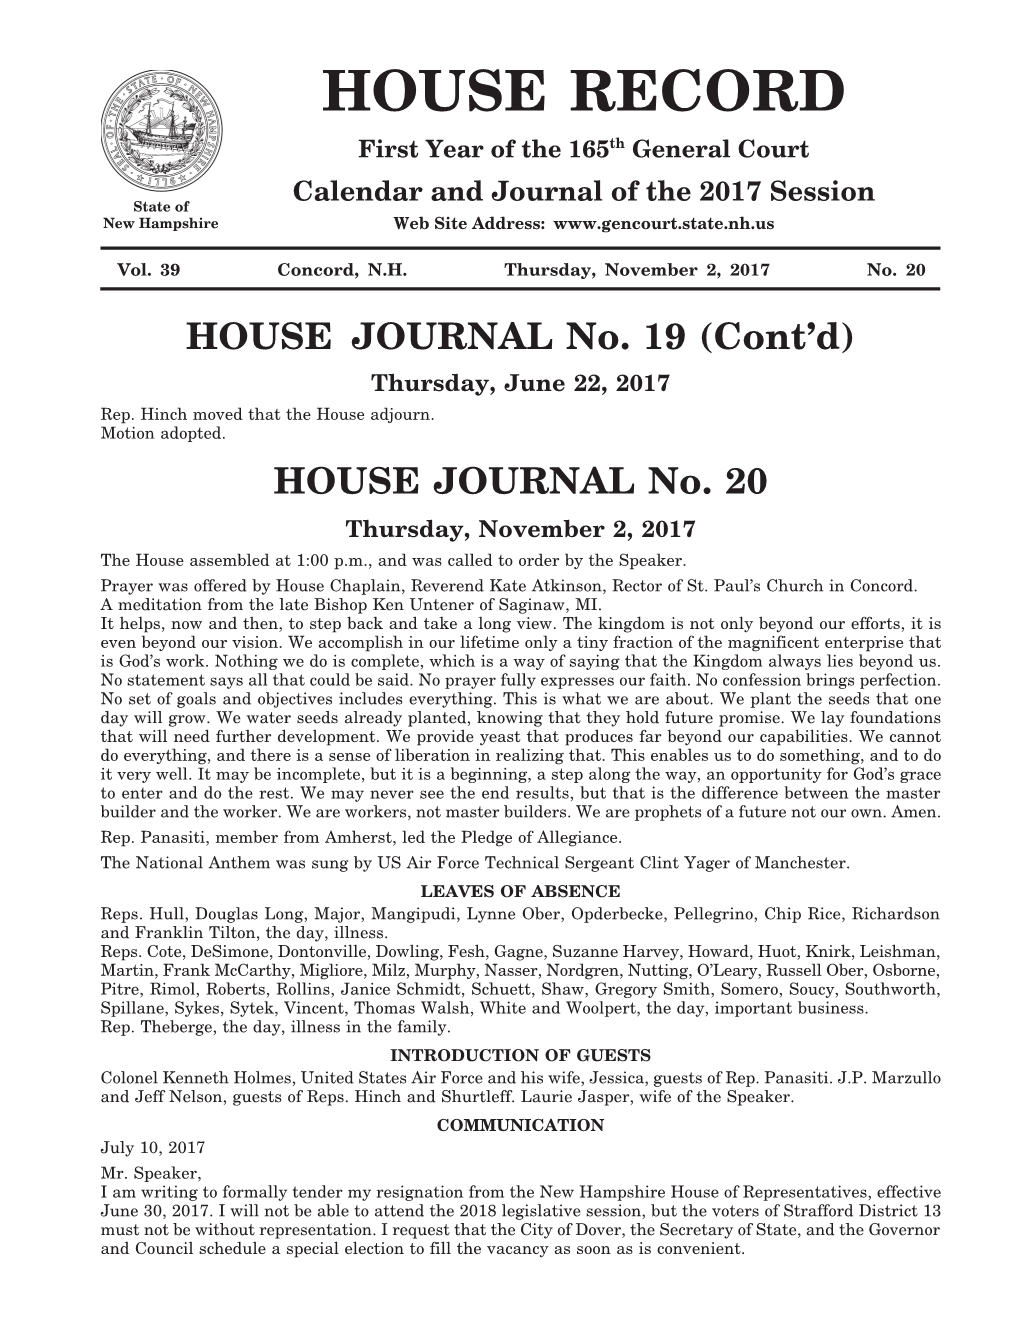 HOUSE JOURNAL No. 19 (Cont’D) Thursday, June 22, 2017 Rep